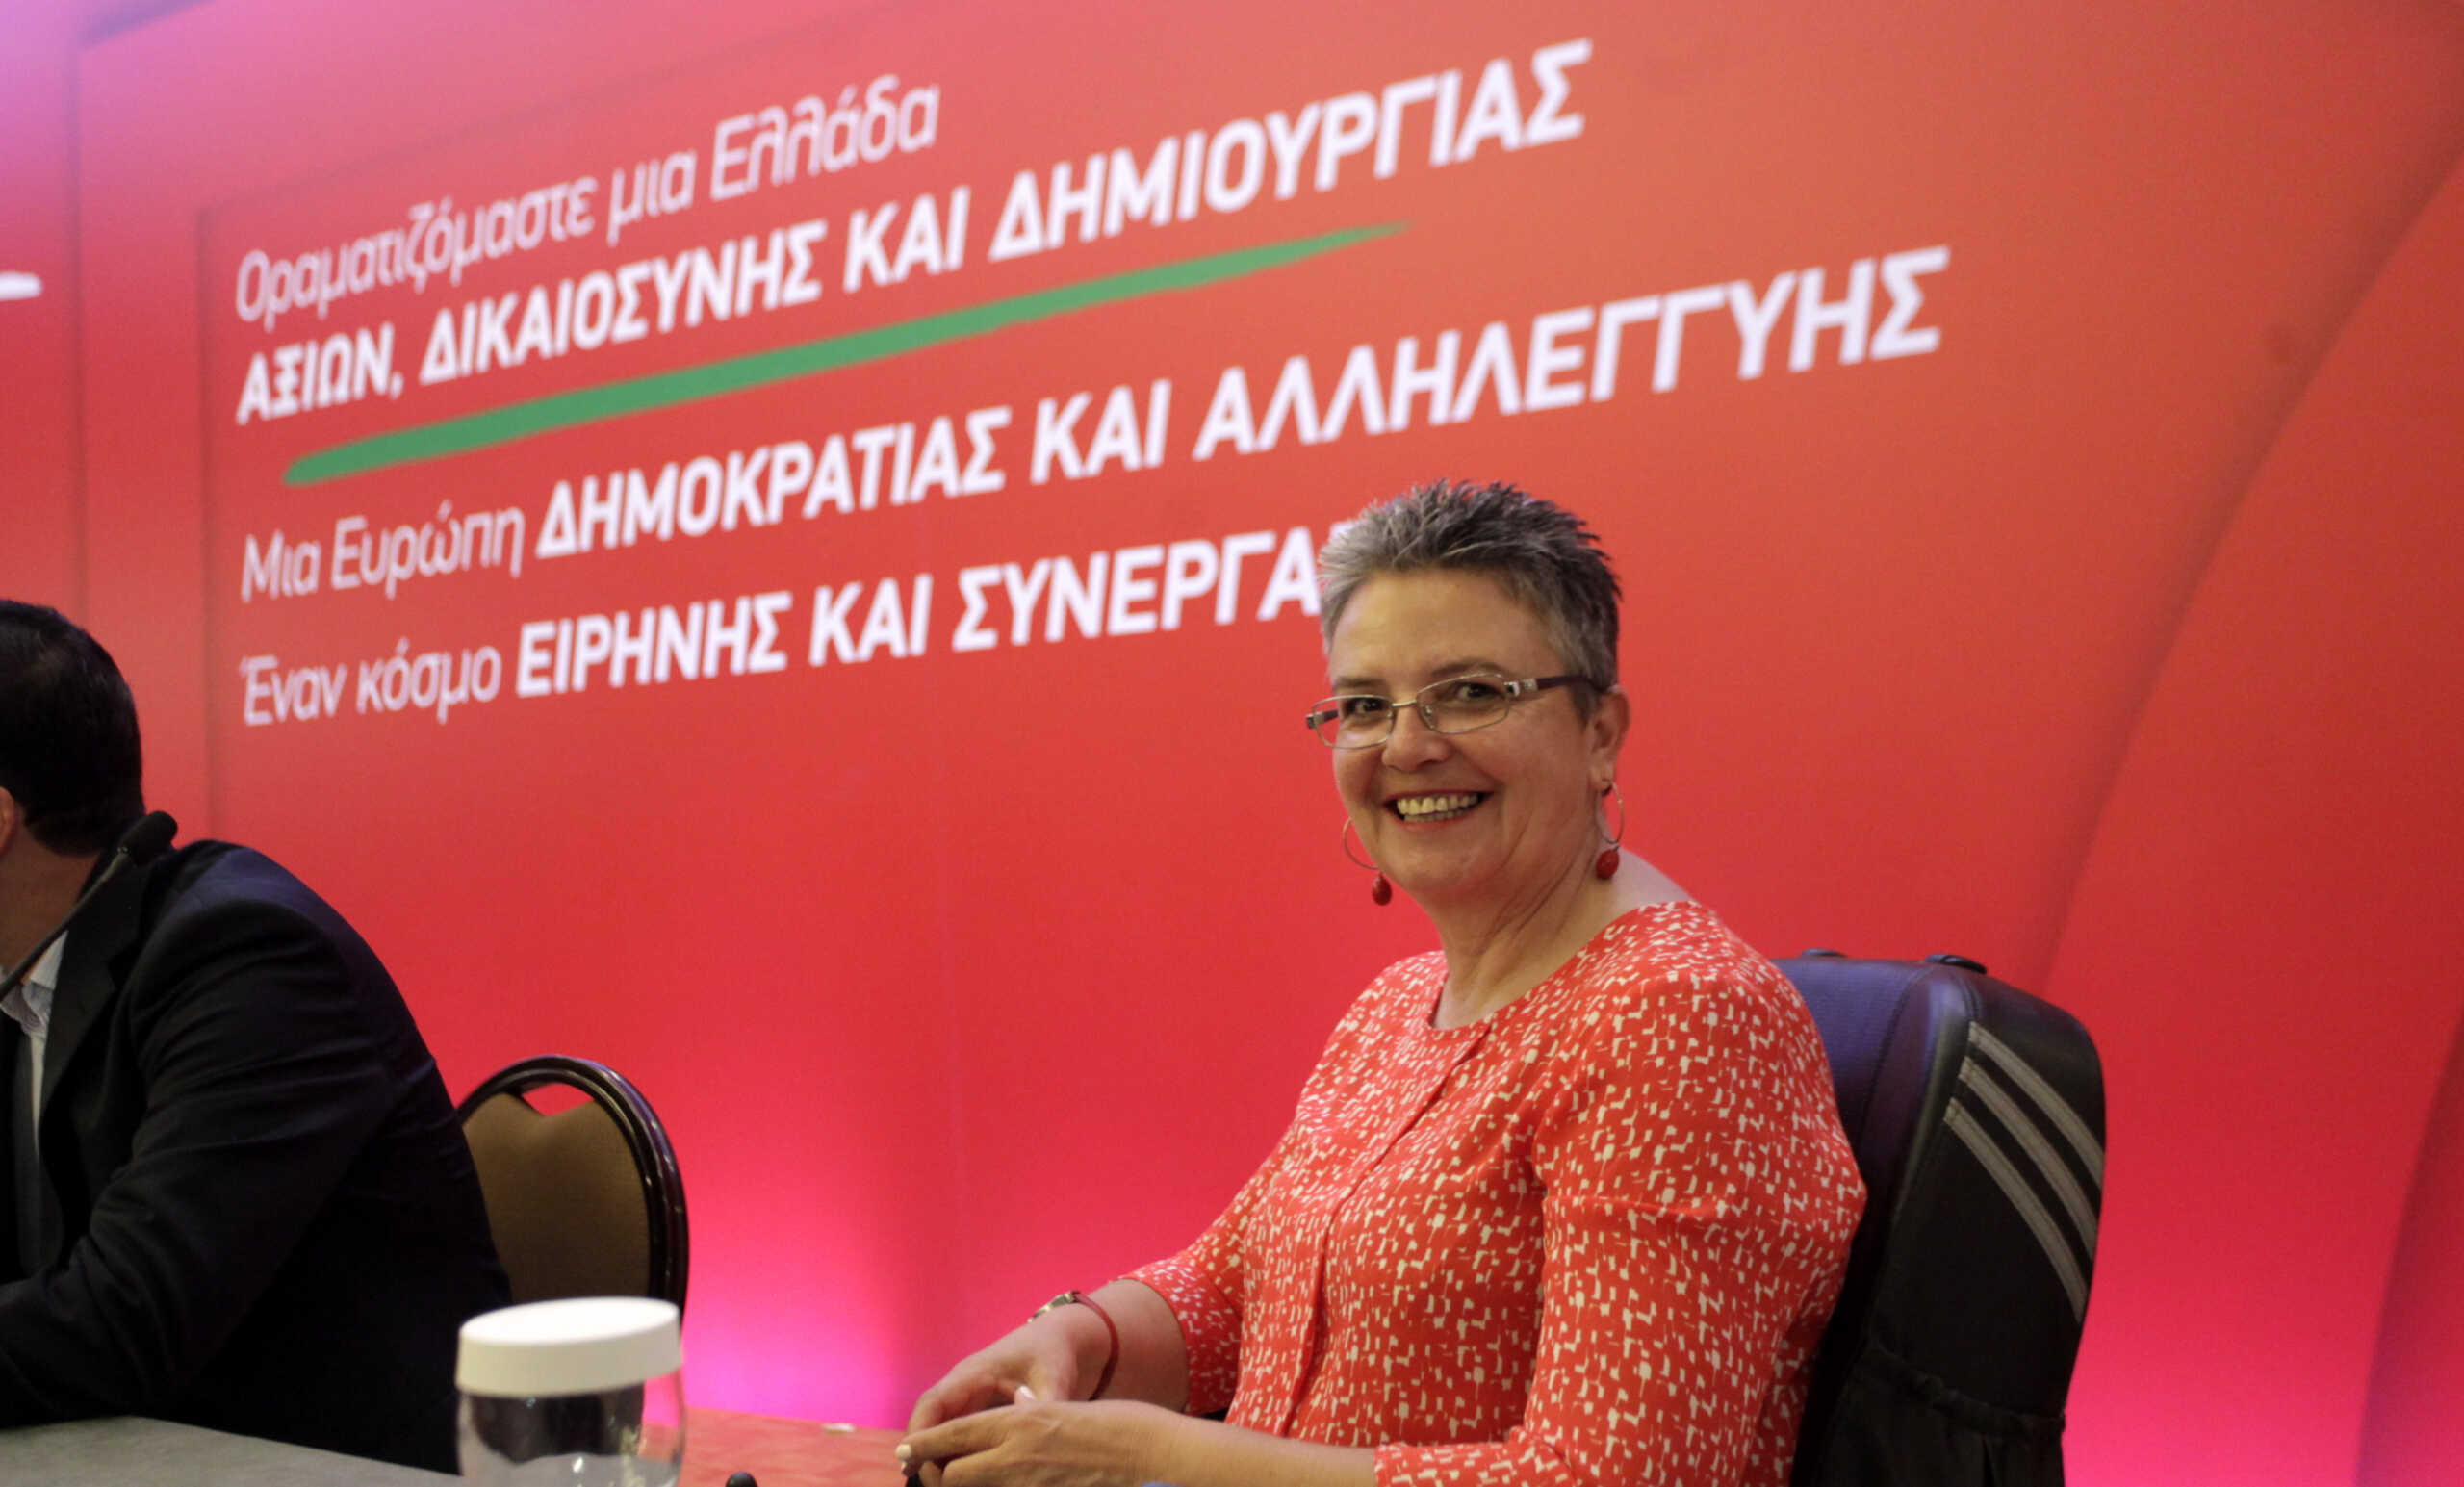 Ευαγγελία Τζαμπάζη: Η πρώην ευρωβουλευτής του ΠΑΣΟΚ καταγγέλλει ότι της έκλεψαν το αναπηρικό αμαξίδιο στη Θεσσαλονίκη